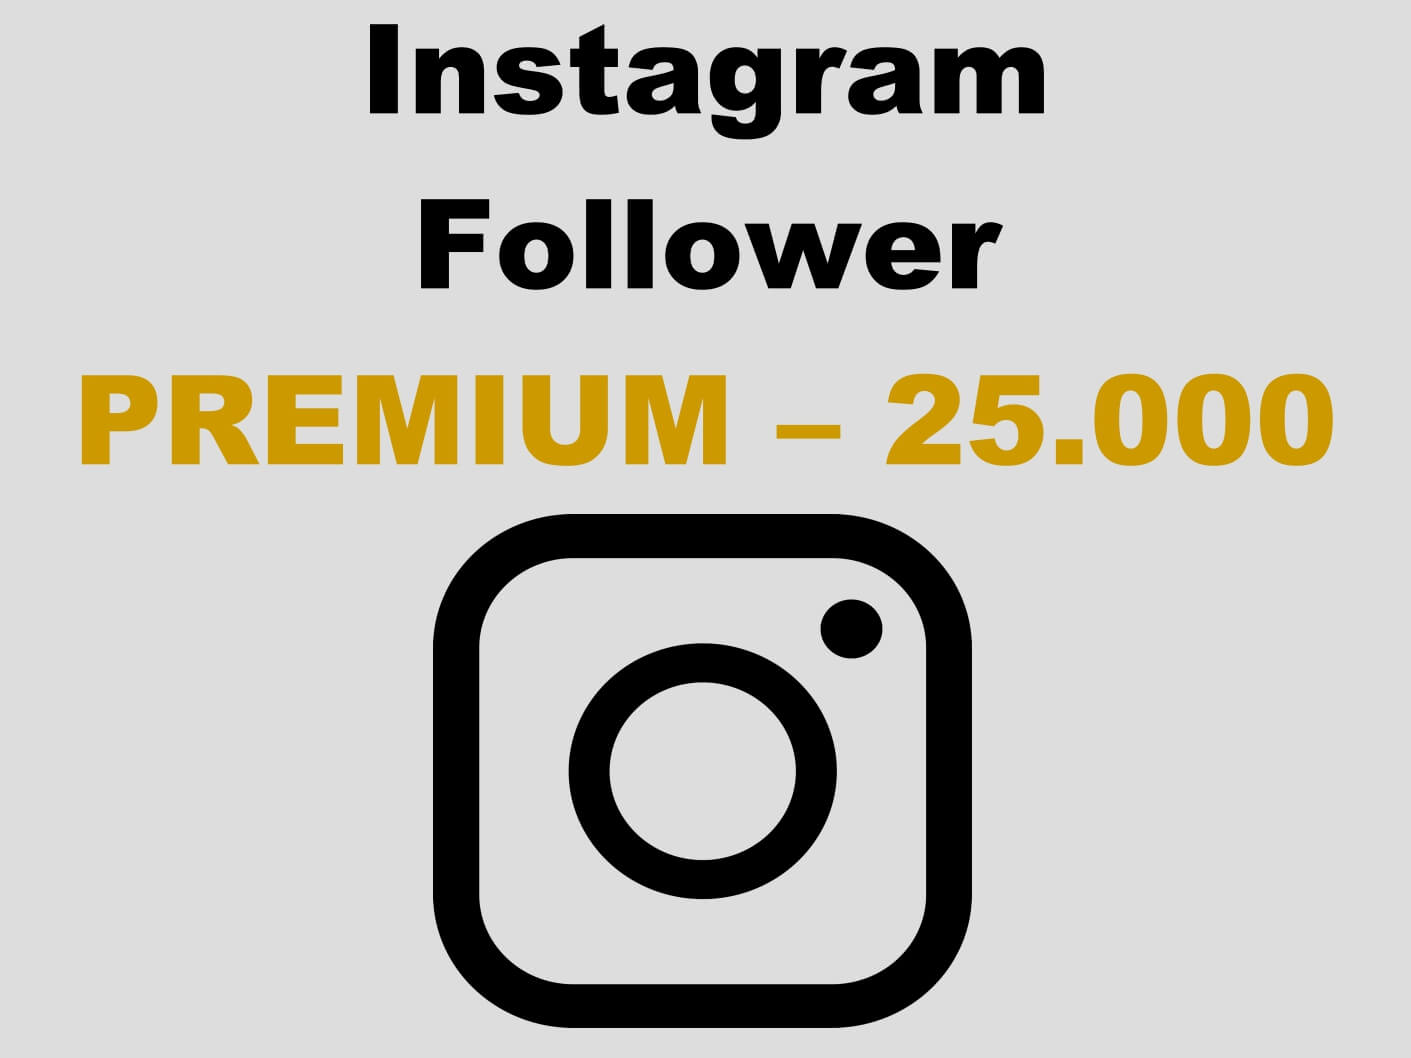 Premium Instagram Follower kaufen 25.000 - Per PayPal und AmEx